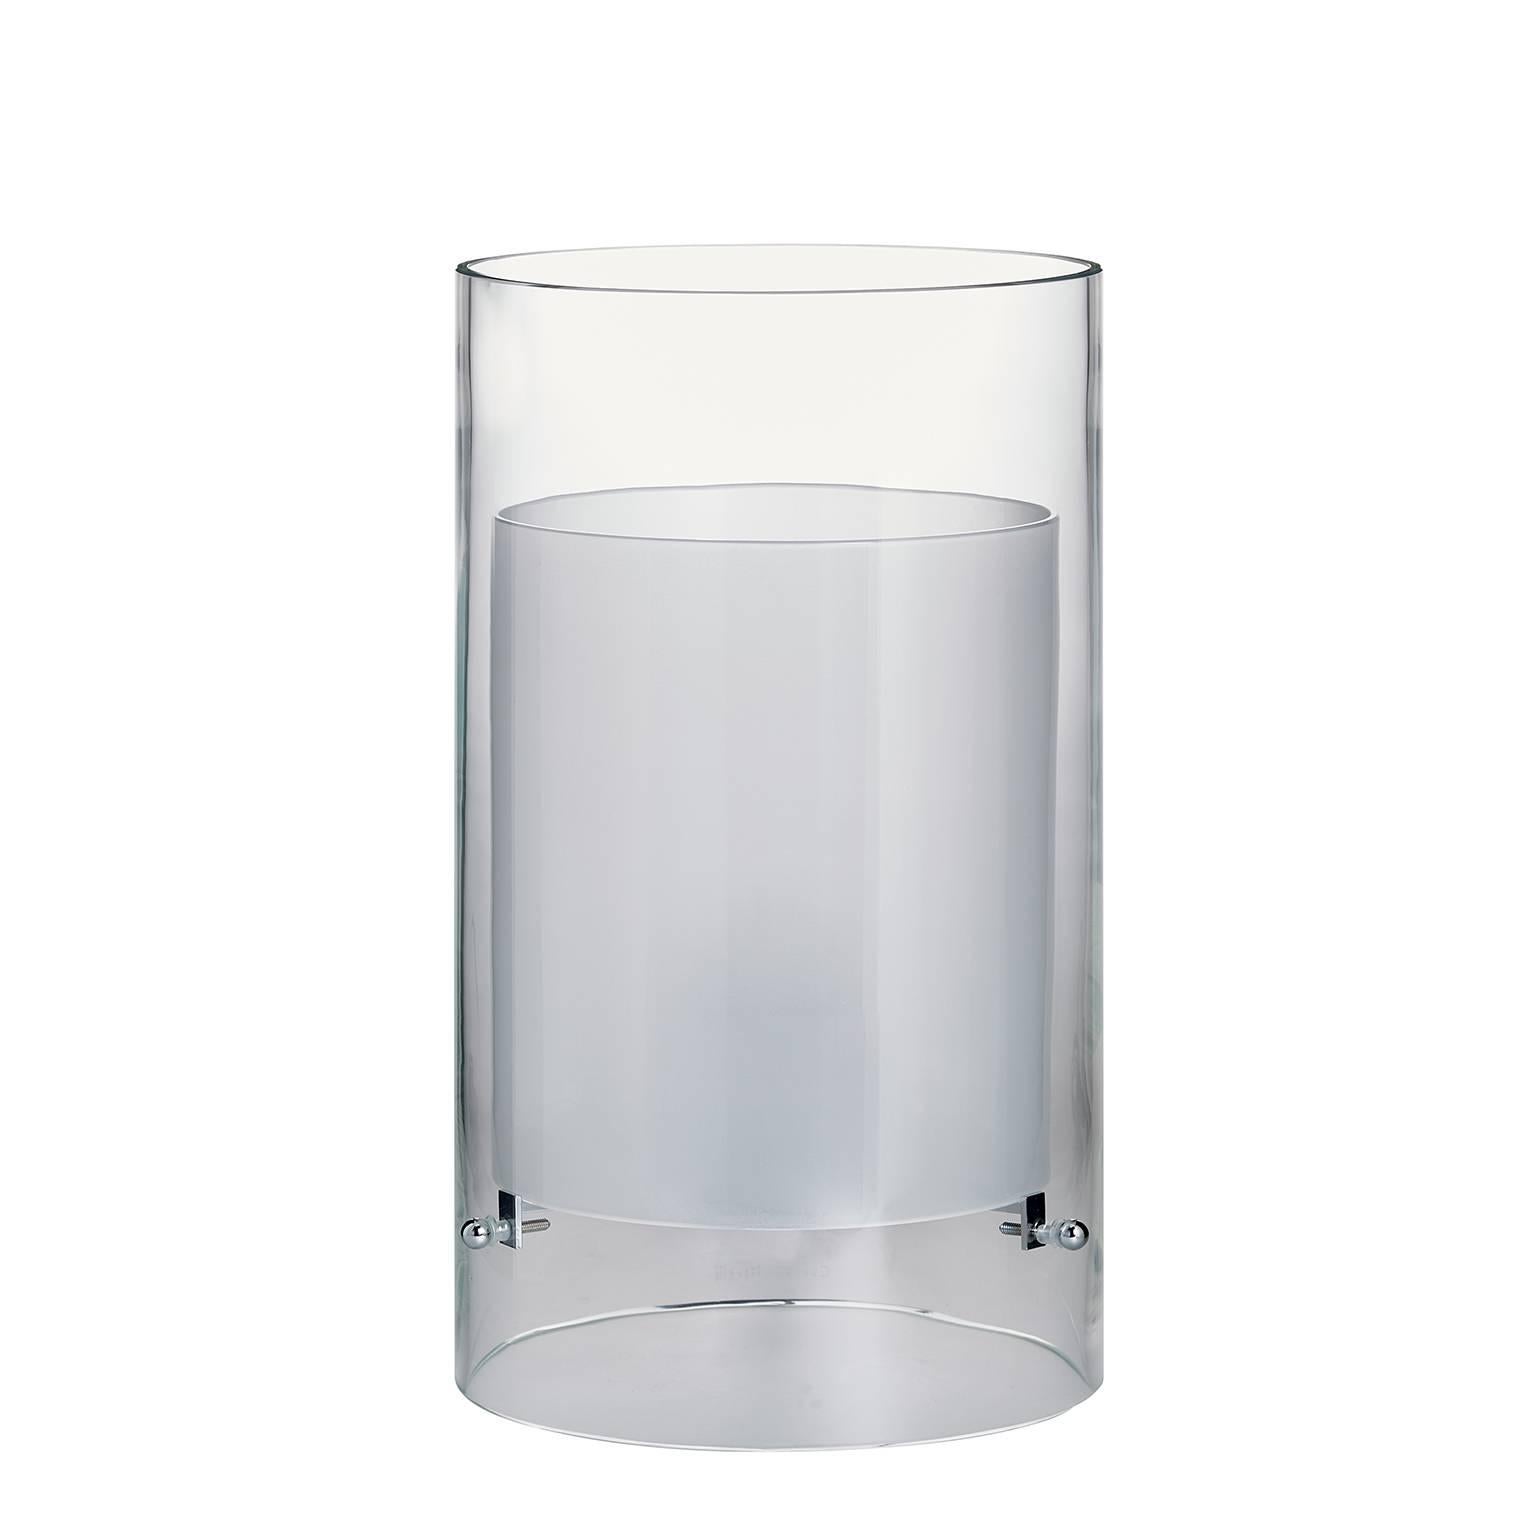 Cilla Carlo Moretti Contemporary Mouth Blown Murano Clear Glass Table Lamp